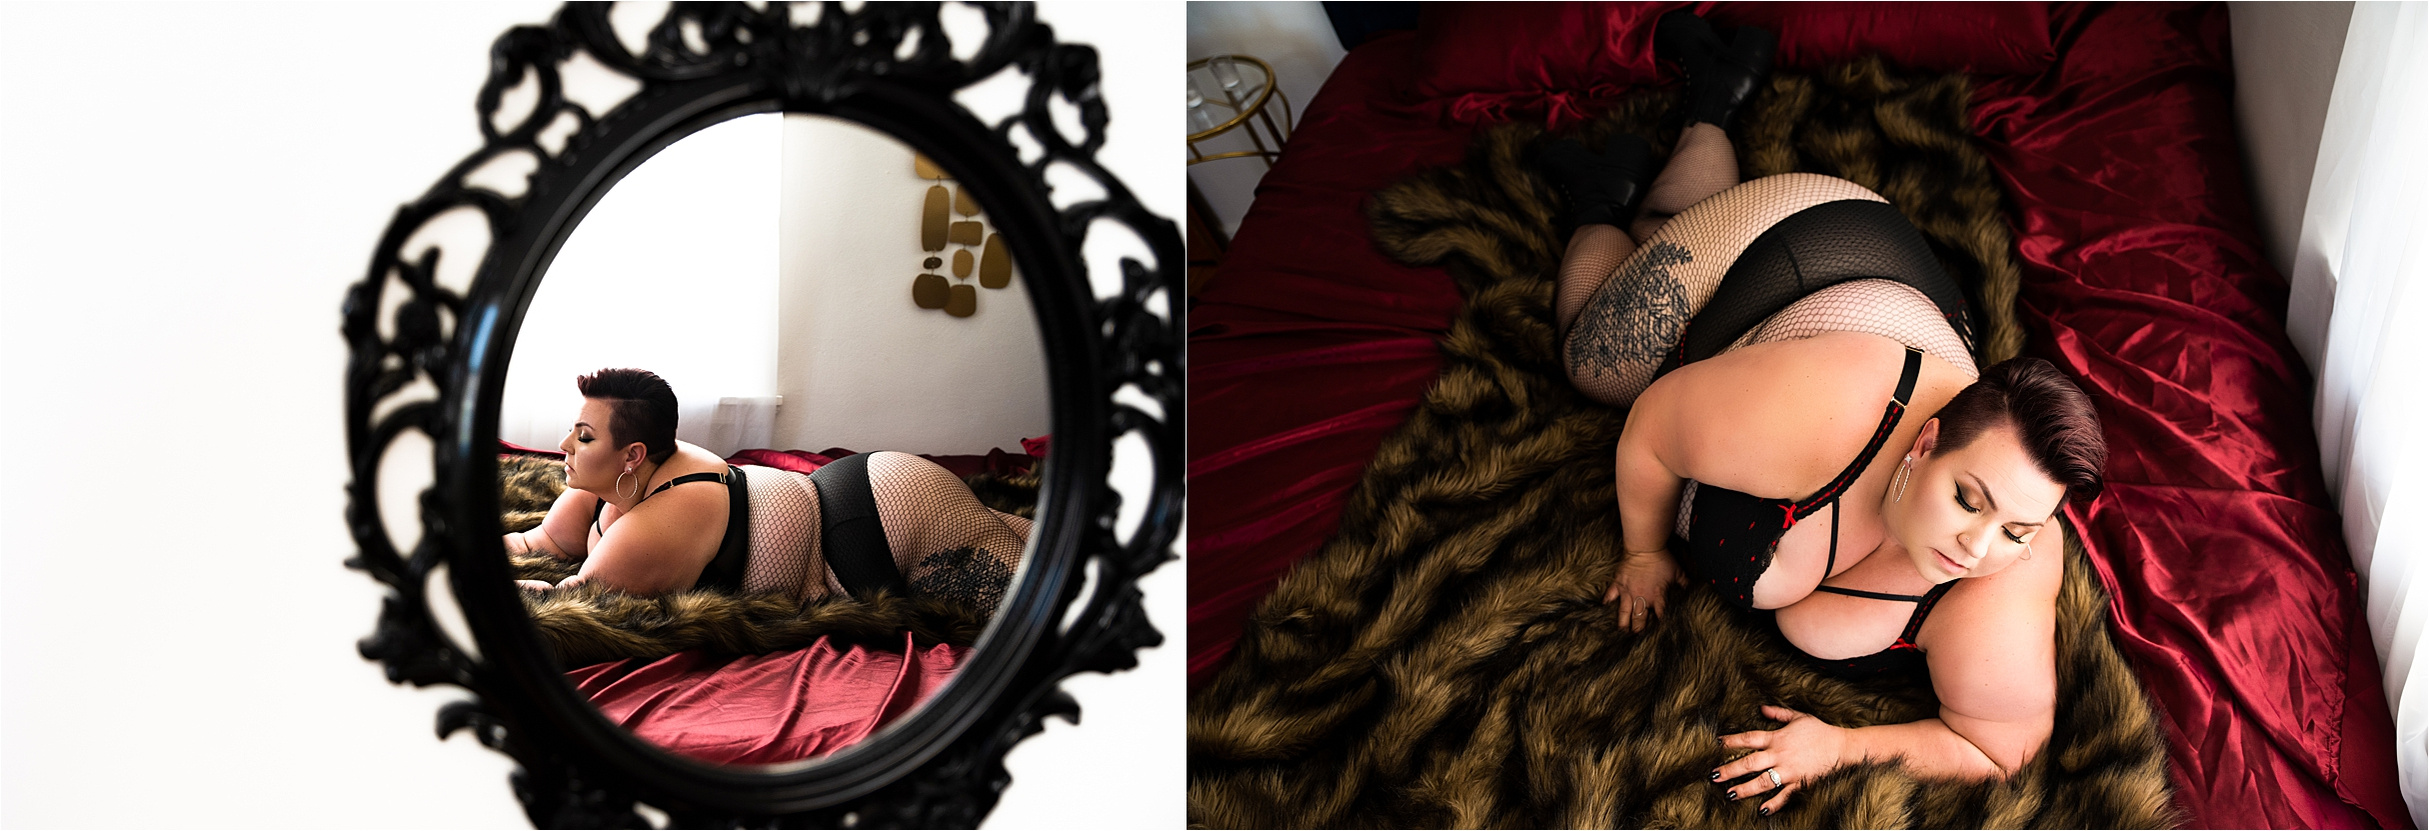 Curvy boudoir in Pittsburgh, combat boot boudoir outfit, boudoir photographer in Pittsburgh specializing in curvy women